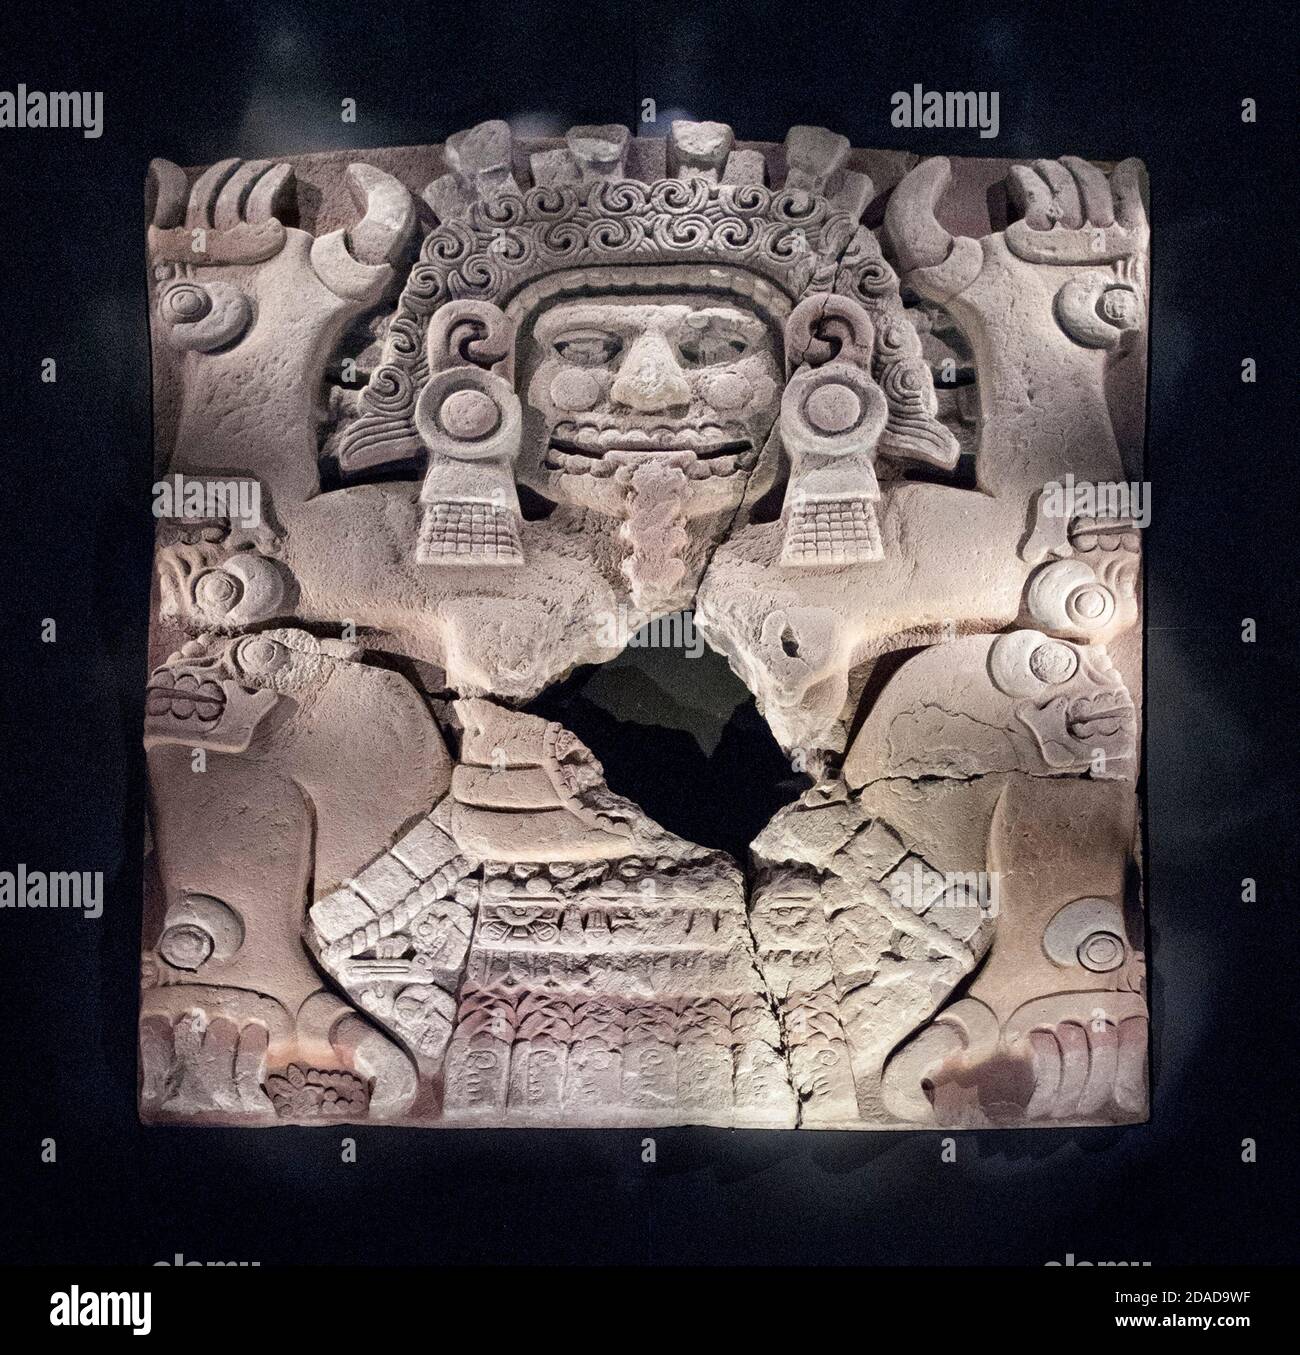 Sculpture en pierre Aztec de Prehispanique exposée au Templo Mayor, Mexico, Mexique Banque D'Images